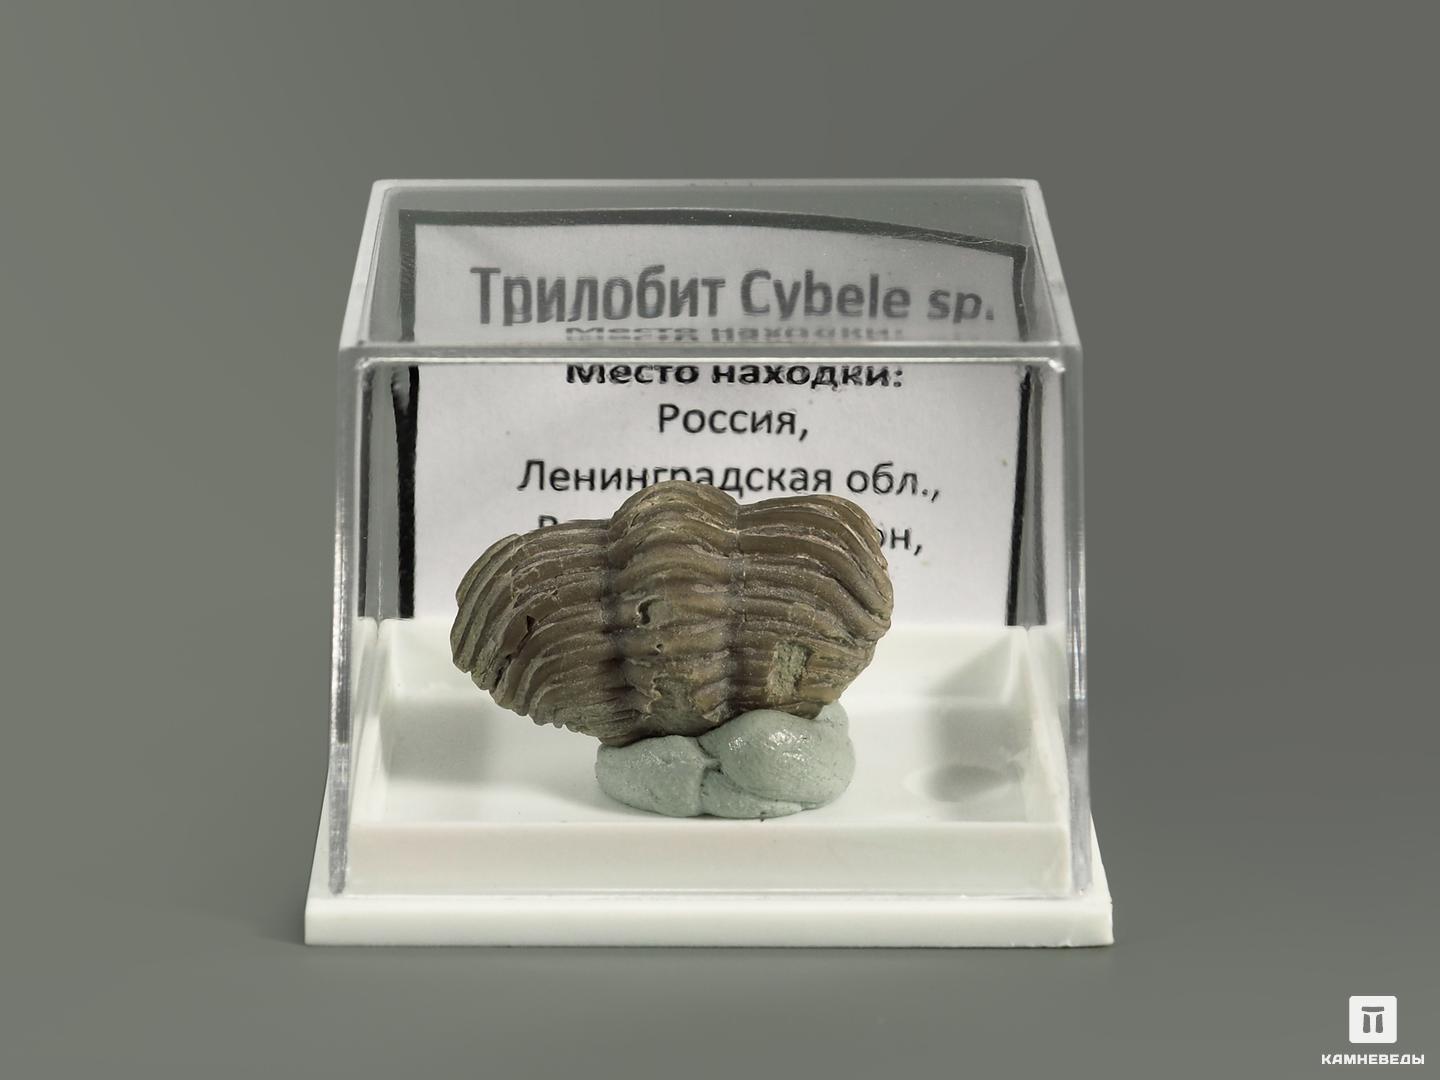 Трилобит Cybele sp. в пластиковом боксе, 5442, фото 2